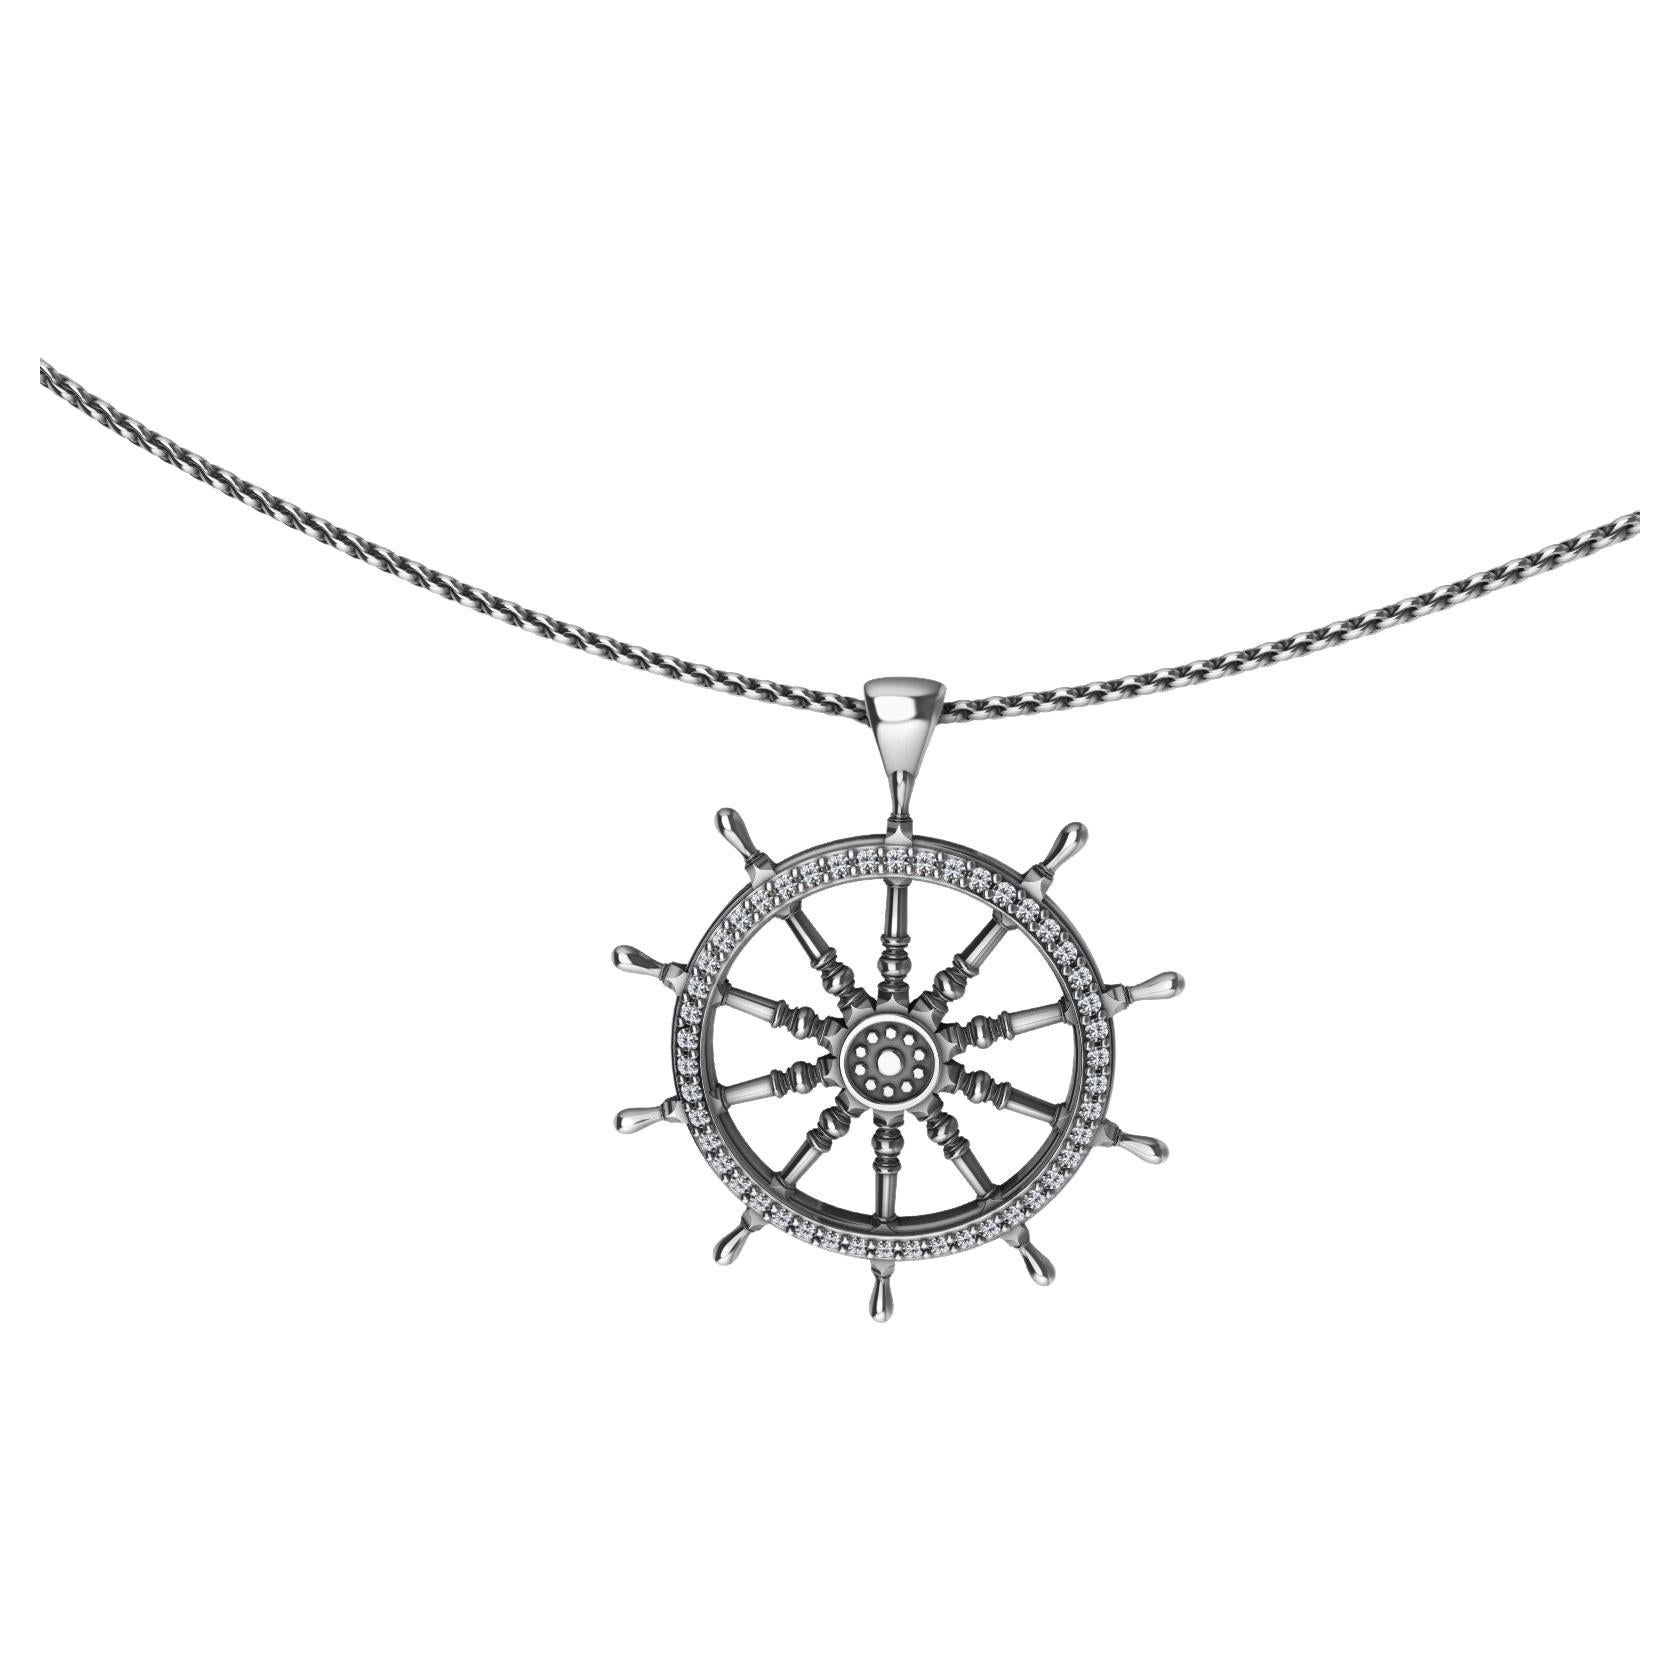  Pendentif en diamant en forme de roue de marin, pour les amoureux de l'eau et du vent. Le designer de Tiffany, Thomas Kurilla, ne vous a pas oubliés. Inspiré des anciennes roues de bateau en bois. Il est également passionné de voile.
46-G, SI 1 